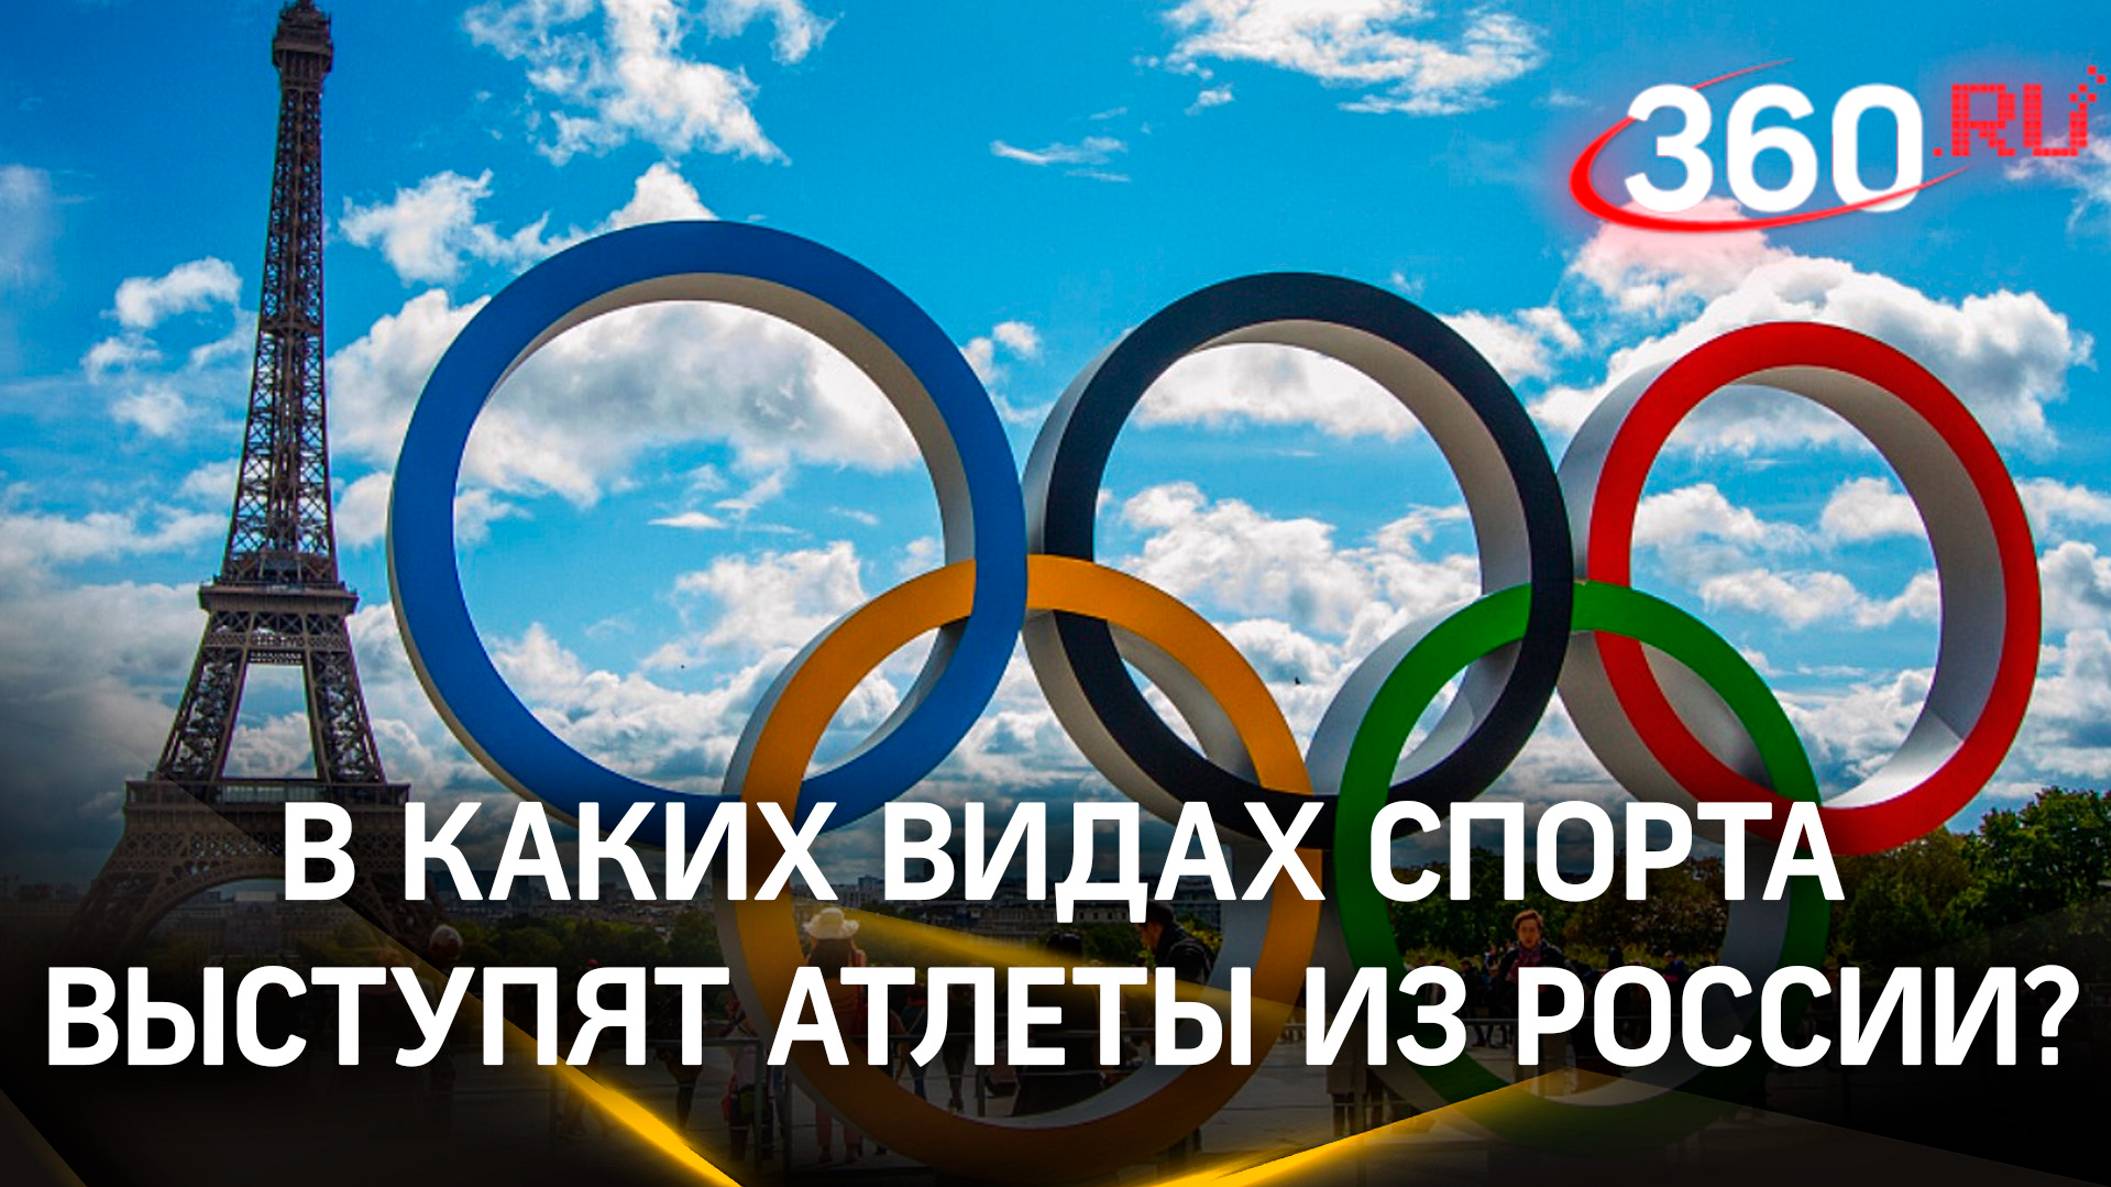 Полный список 15 спортсменов из России на парижской Олимпиаде. С украинцами здороваться не придется